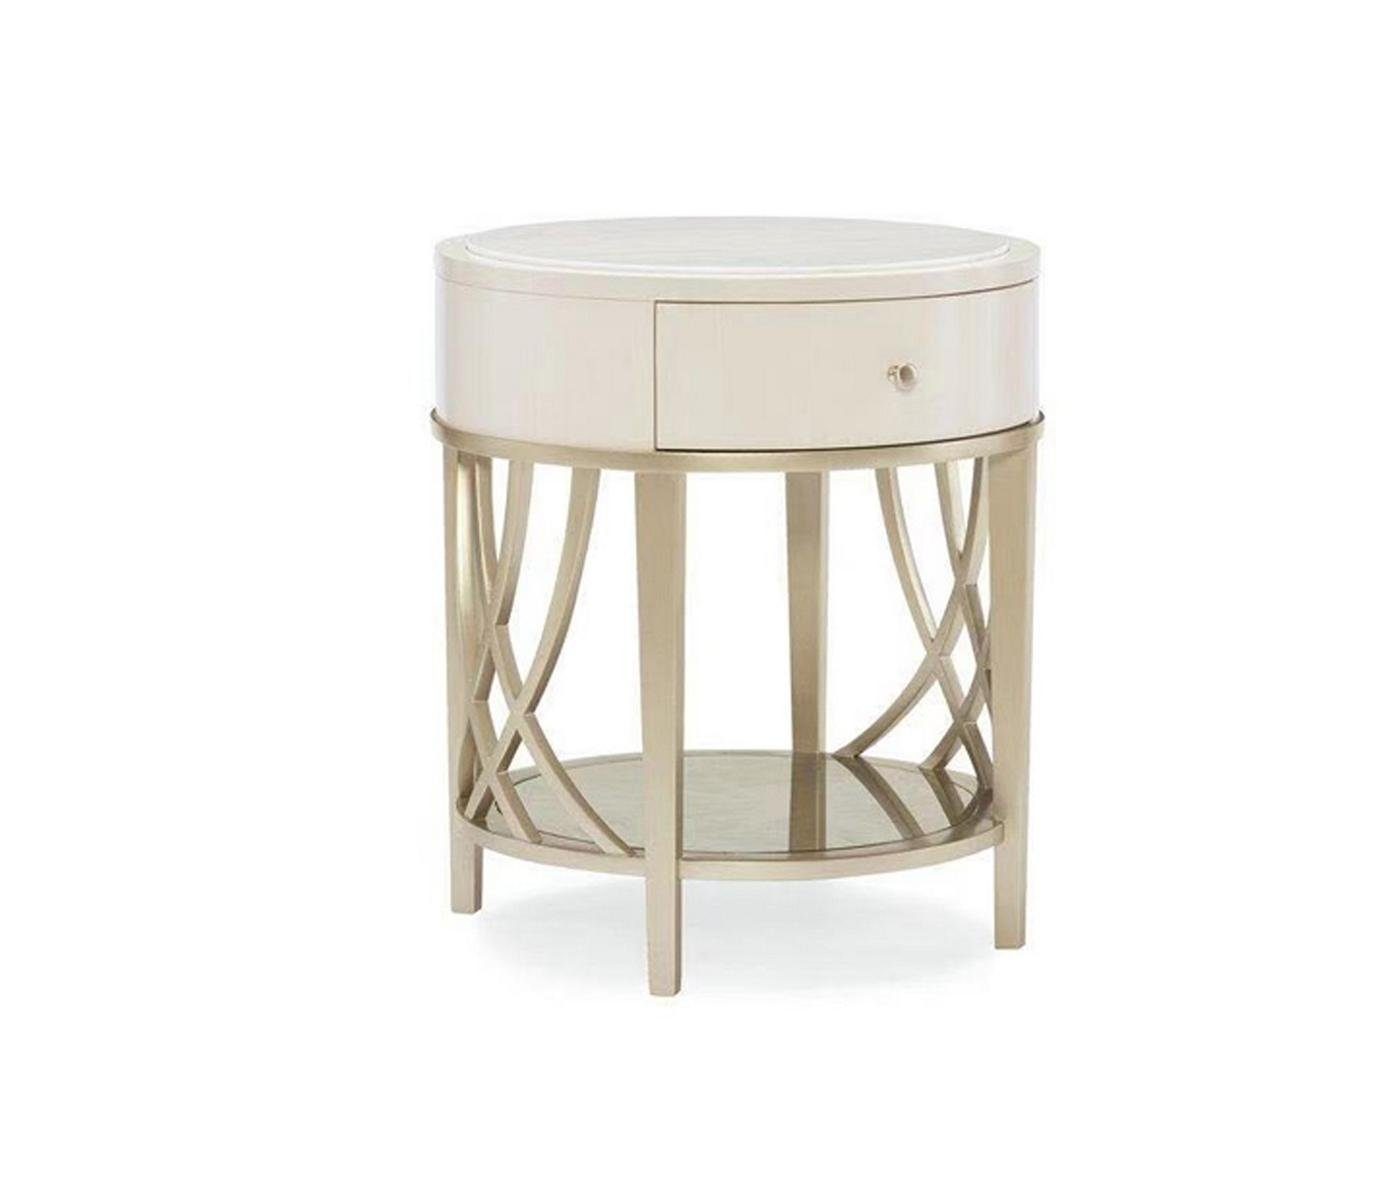 JVmoebel Beistelltisch, Beistelltisch Kaffeetisch Design Tisch Wohnzimmertisch Tische